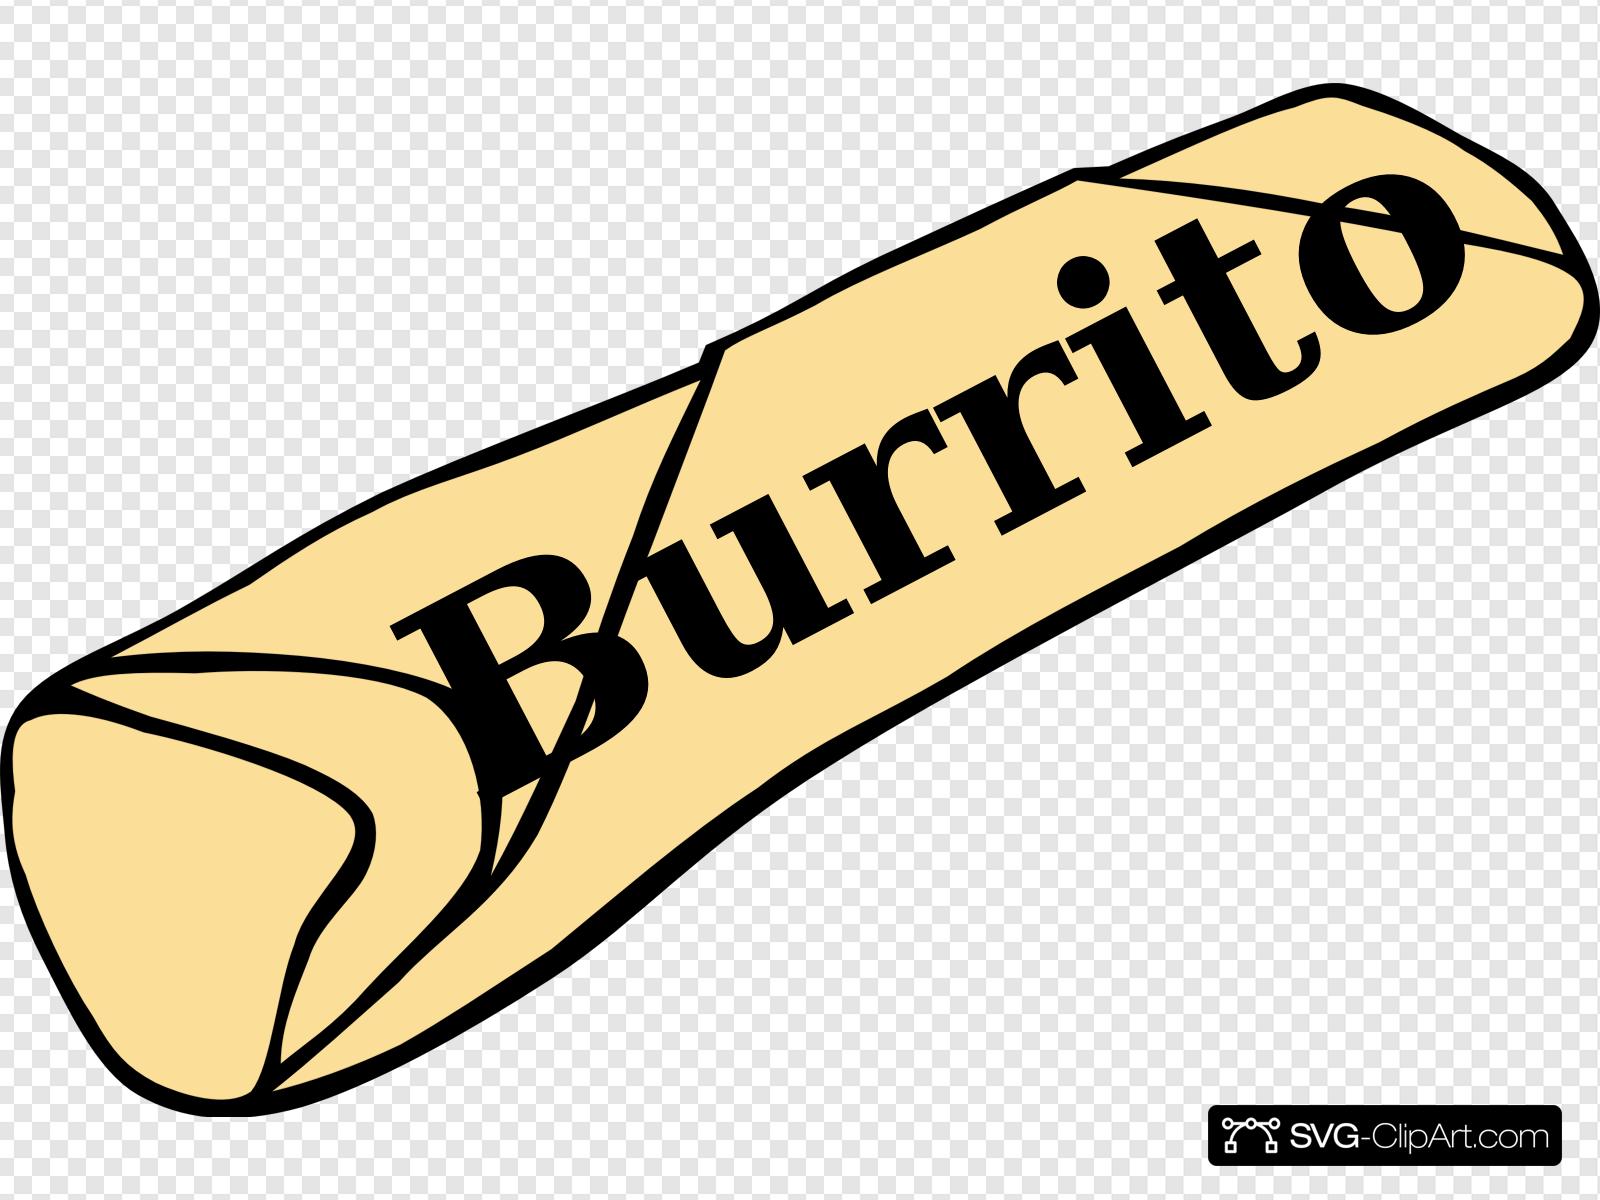 burrito clipart svg